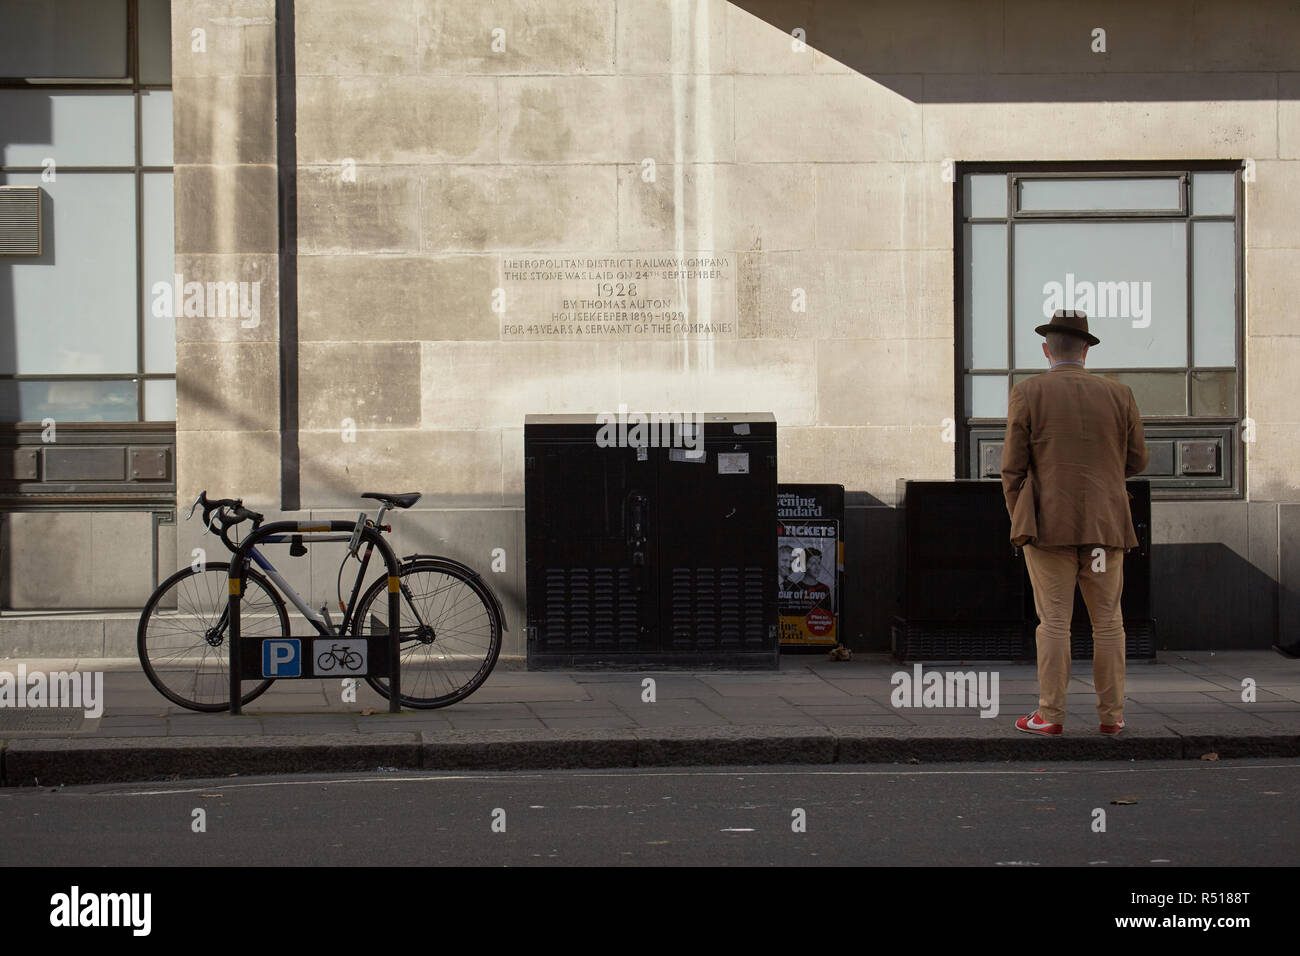 Uomo in attesa a St. James Park Station con una placca del Metropolita azienda ferroviaria sulla parete. Foto Stock